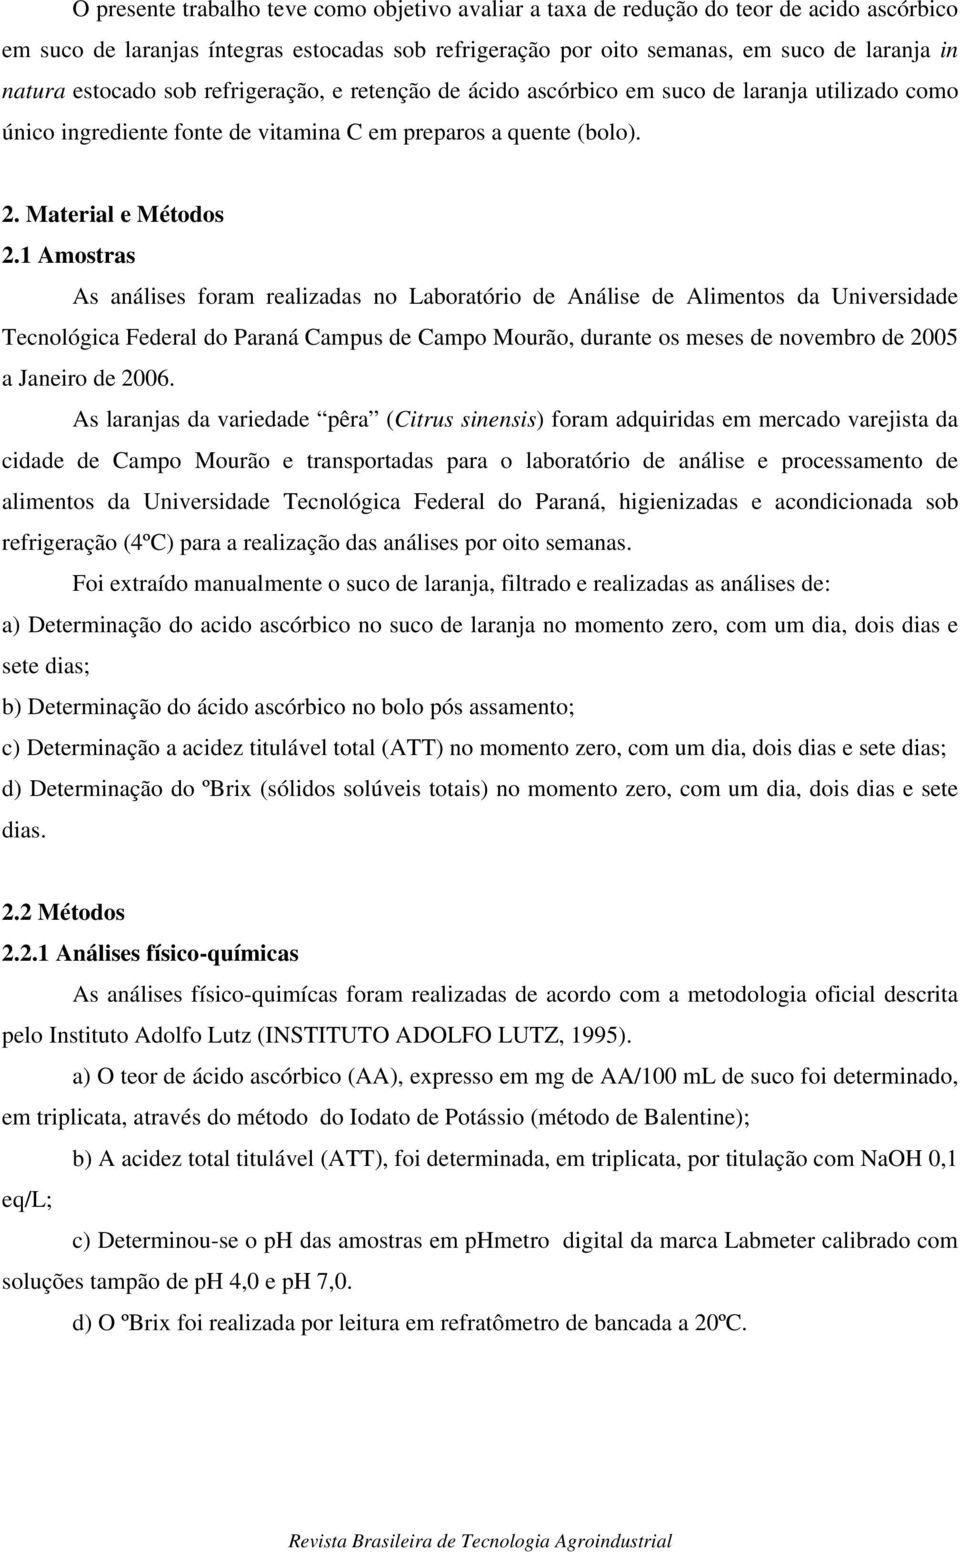 1 Amostras As análises foram realizadas no Laboratório de Análise de Alimentos da Universidade Tecnológica Federal do Paraná Campus de Campo Mourão, durante os meses de novembro de 2005 a Janeiro de